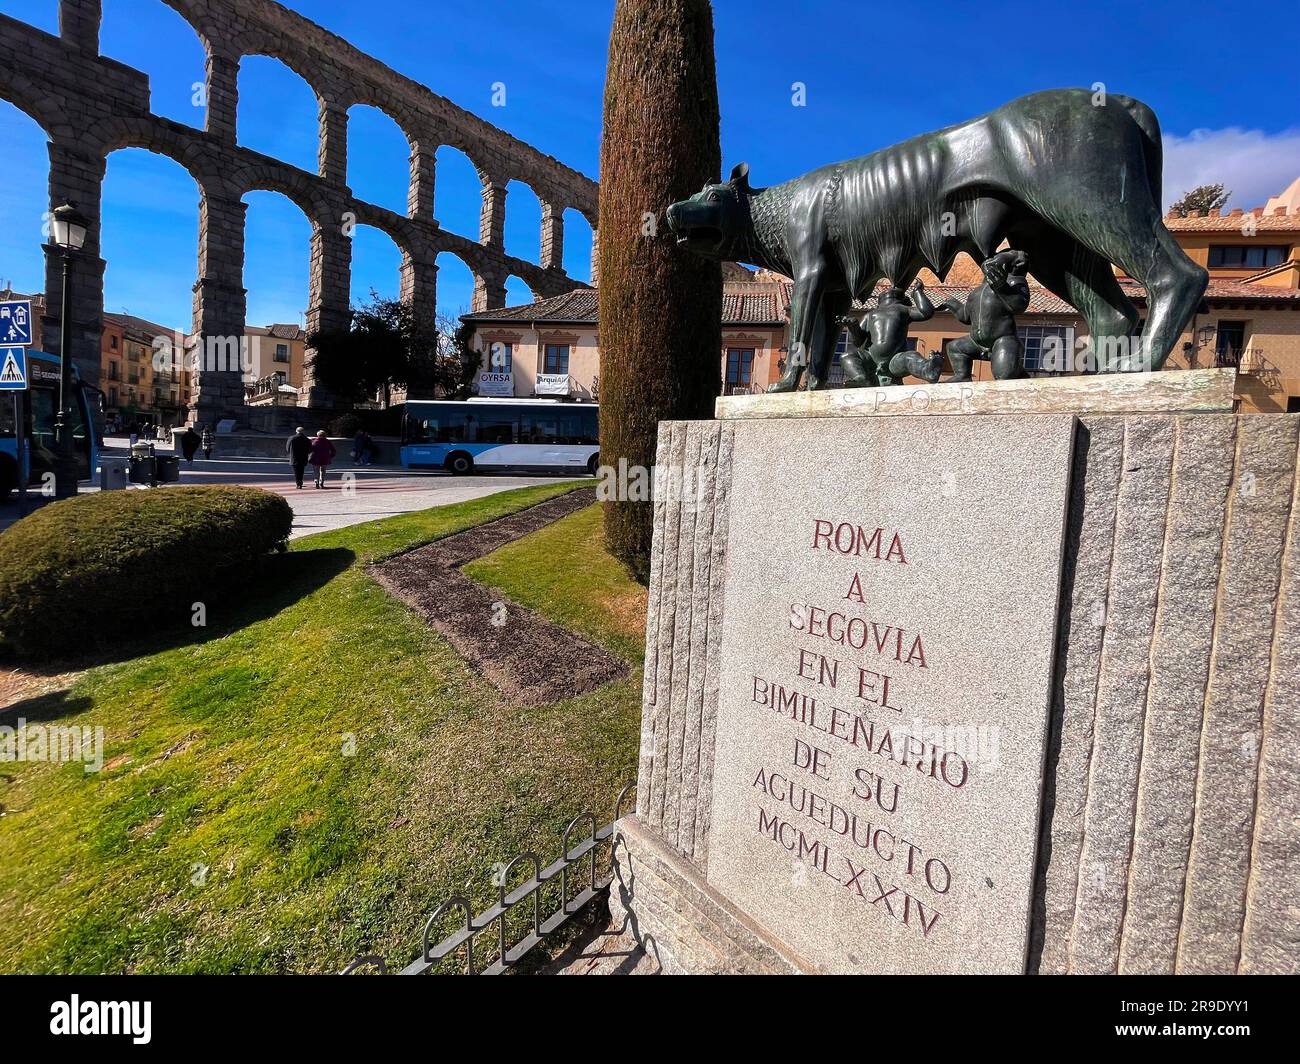 Ségovie, Espagne-18 février 2022 : statue du loup du Capitole sous l'aqueduc romain de Ségovie. La statue symbolise Rome et l'Empire romain. Banque D'Images